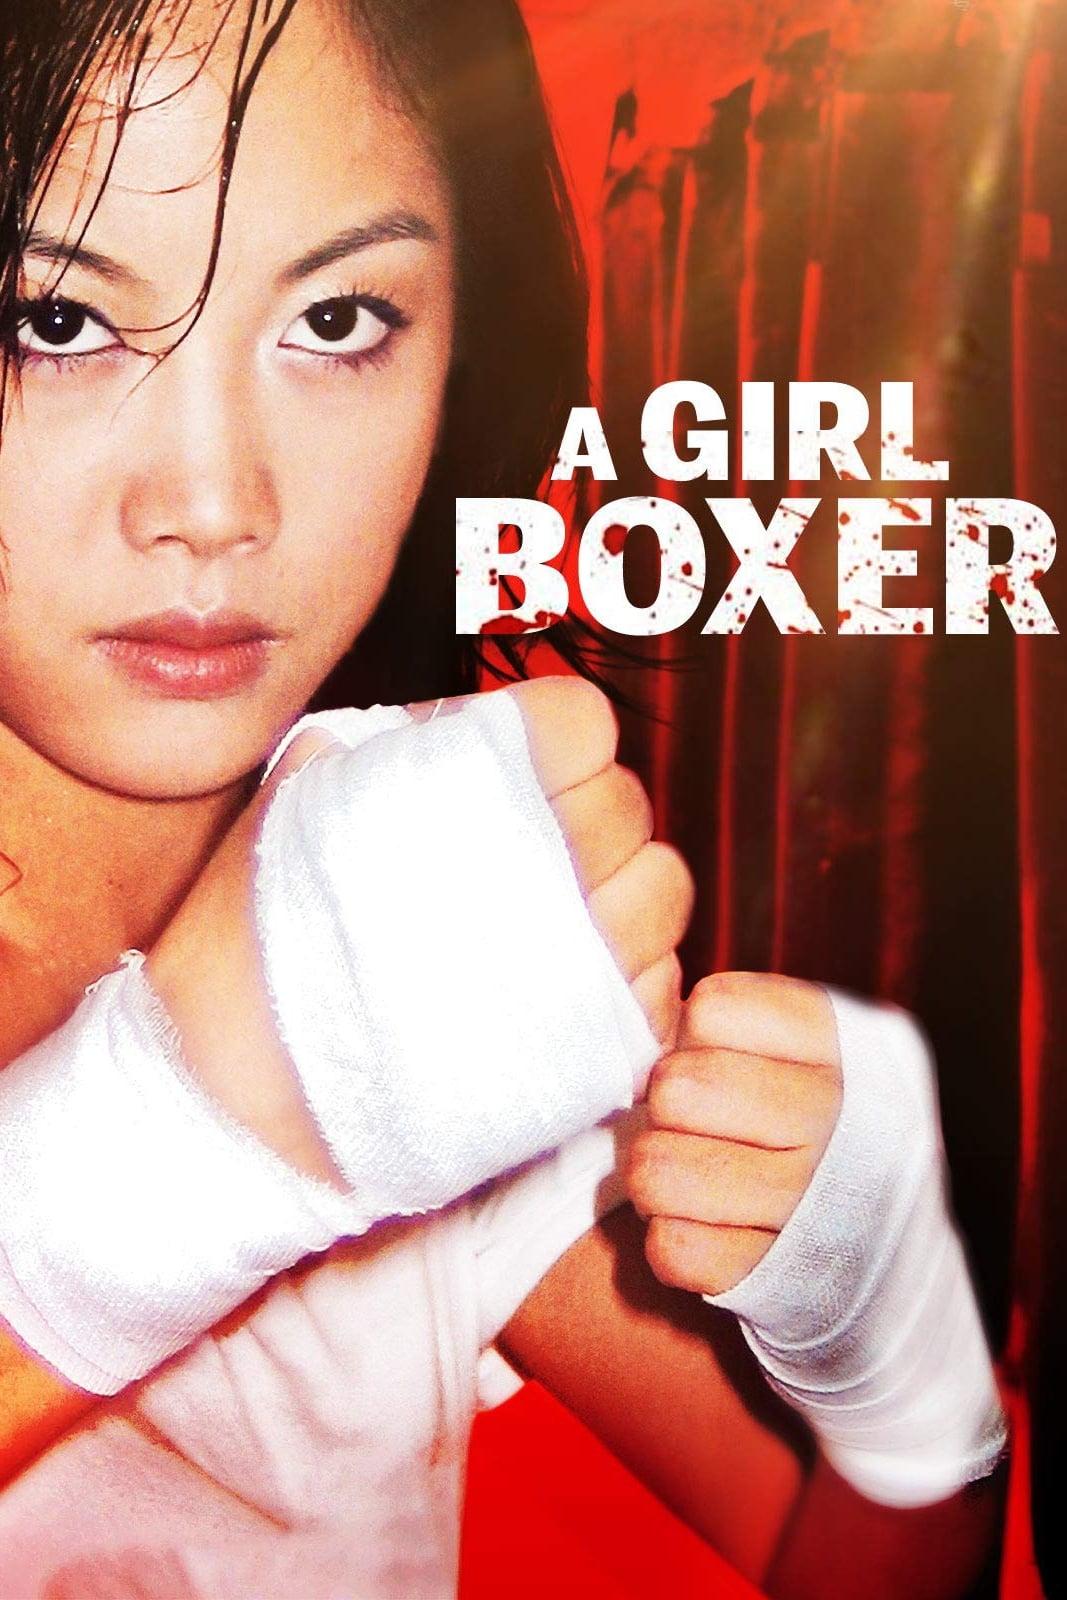 A Girl Boxer poster